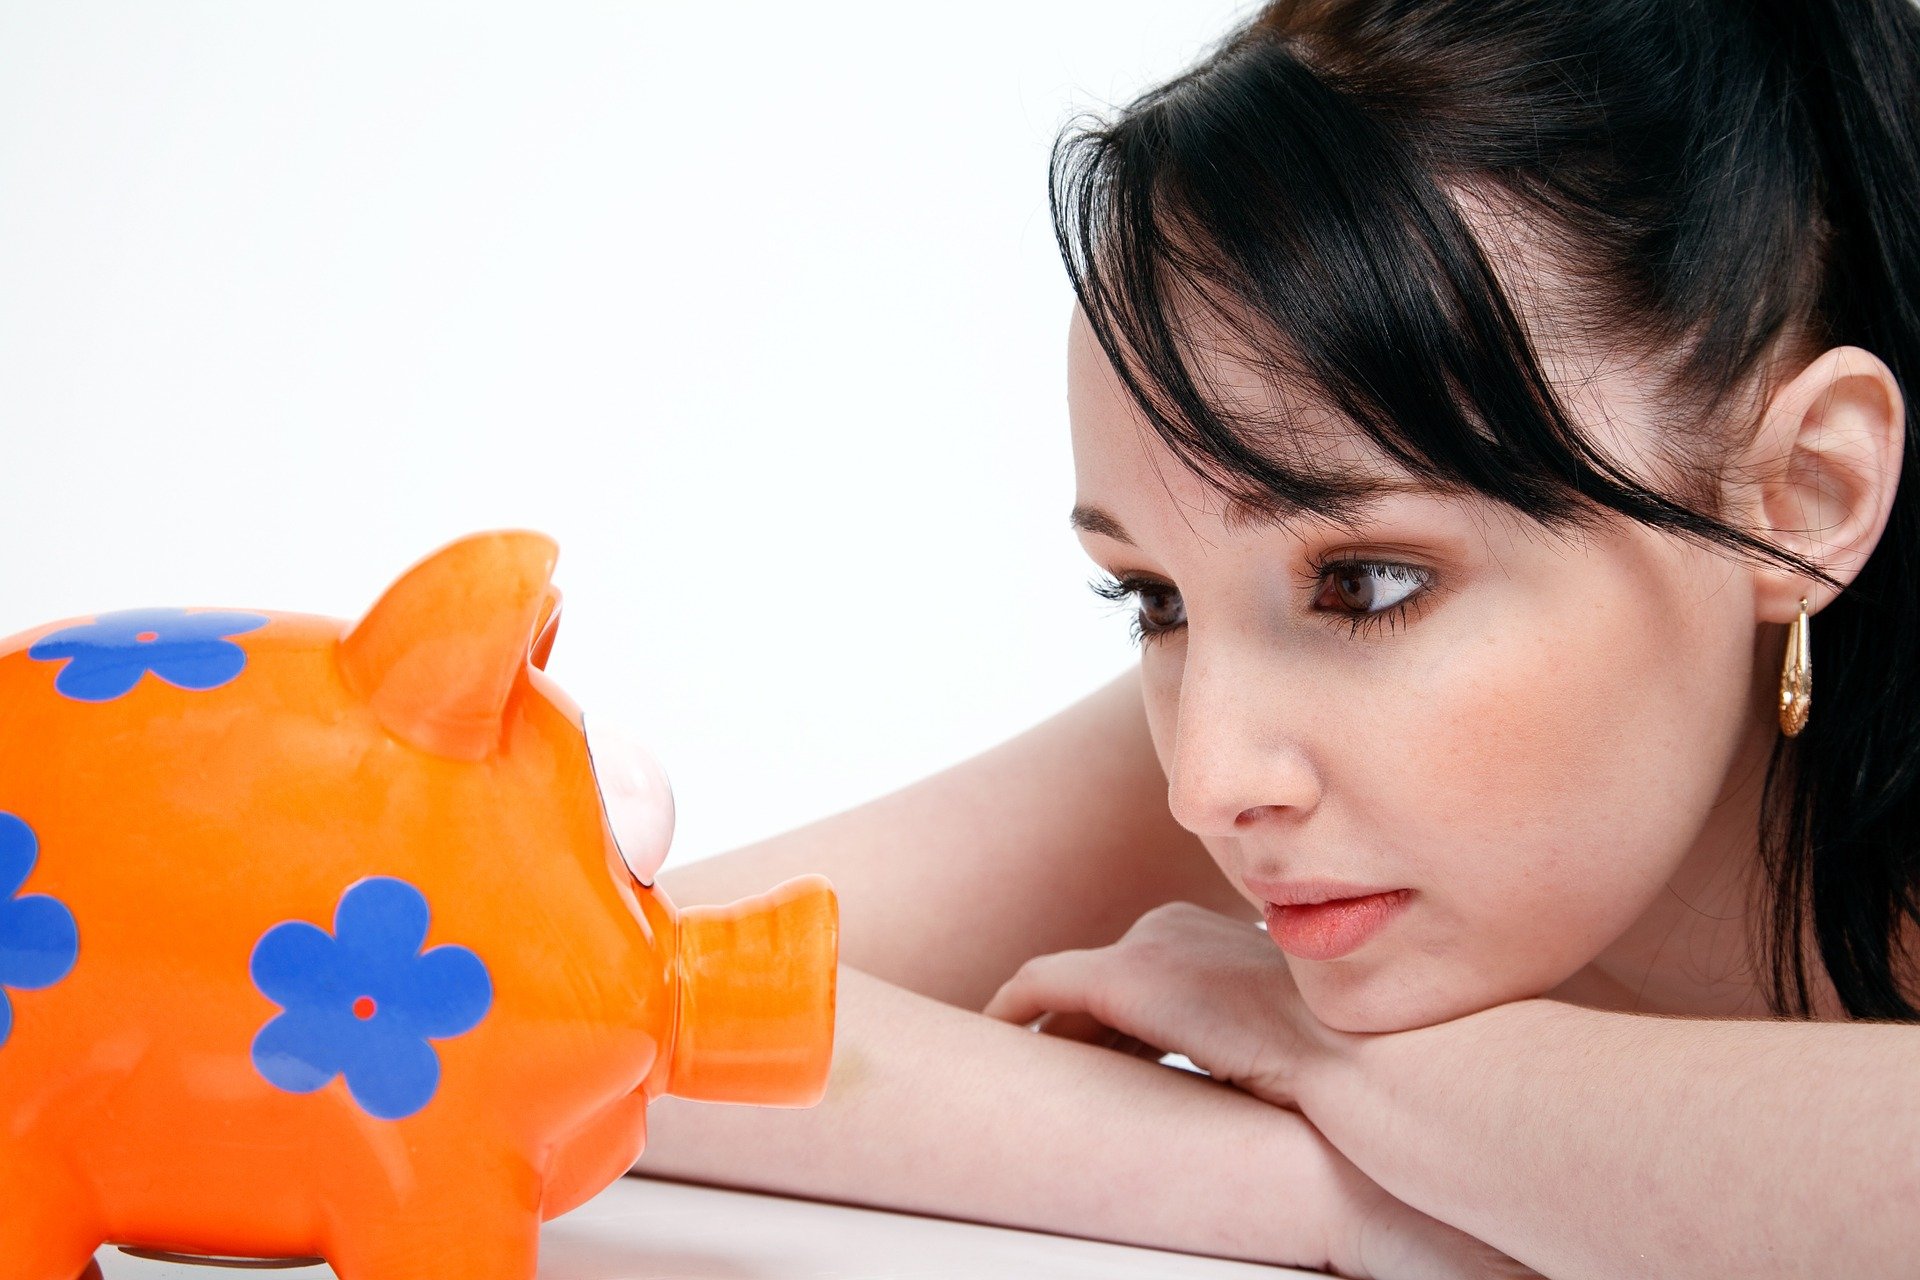 https://pixabay.com/photos/piggy-bank-saving-money-young-woman-850607/